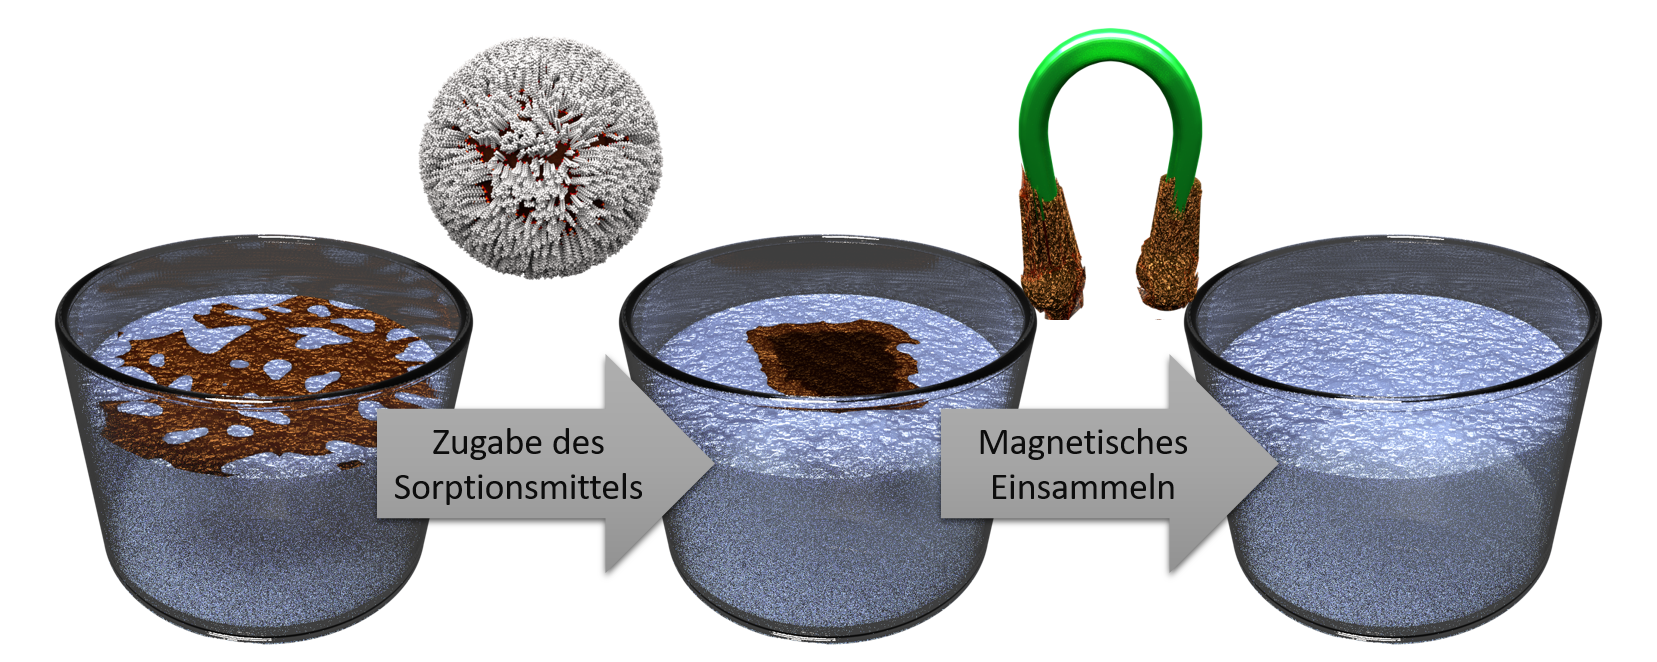 Zum Artikel "Wie Öl attraktiv für Magneten wird"